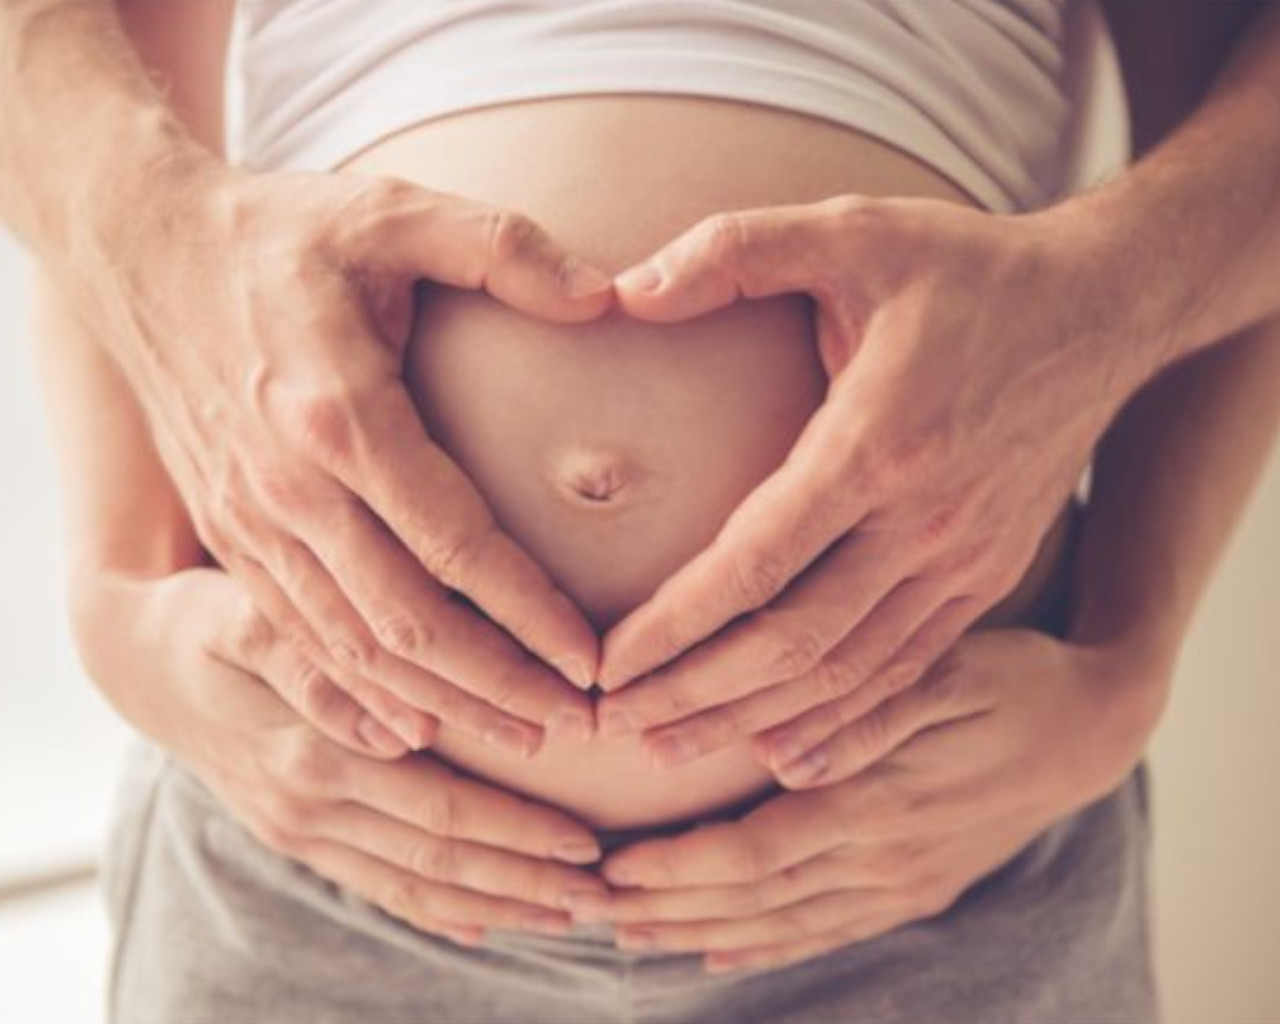 εγκυμοσυνη,εγκυμοσυνη σκυλου,εγκυμοσυνη εβδομαδεσ,εγκυμοσυνη χωρισ συμπτωματα,εγκυμοσυνη και πονοι περιοδου,εγκυμοσυνη ανα εβδομαδα,εγκυμοσυνη χωρισ συμπτωματα φορουμ,εγκυμοσυνη ονειροκριτησ,εγκυμοσυνη μπομπα